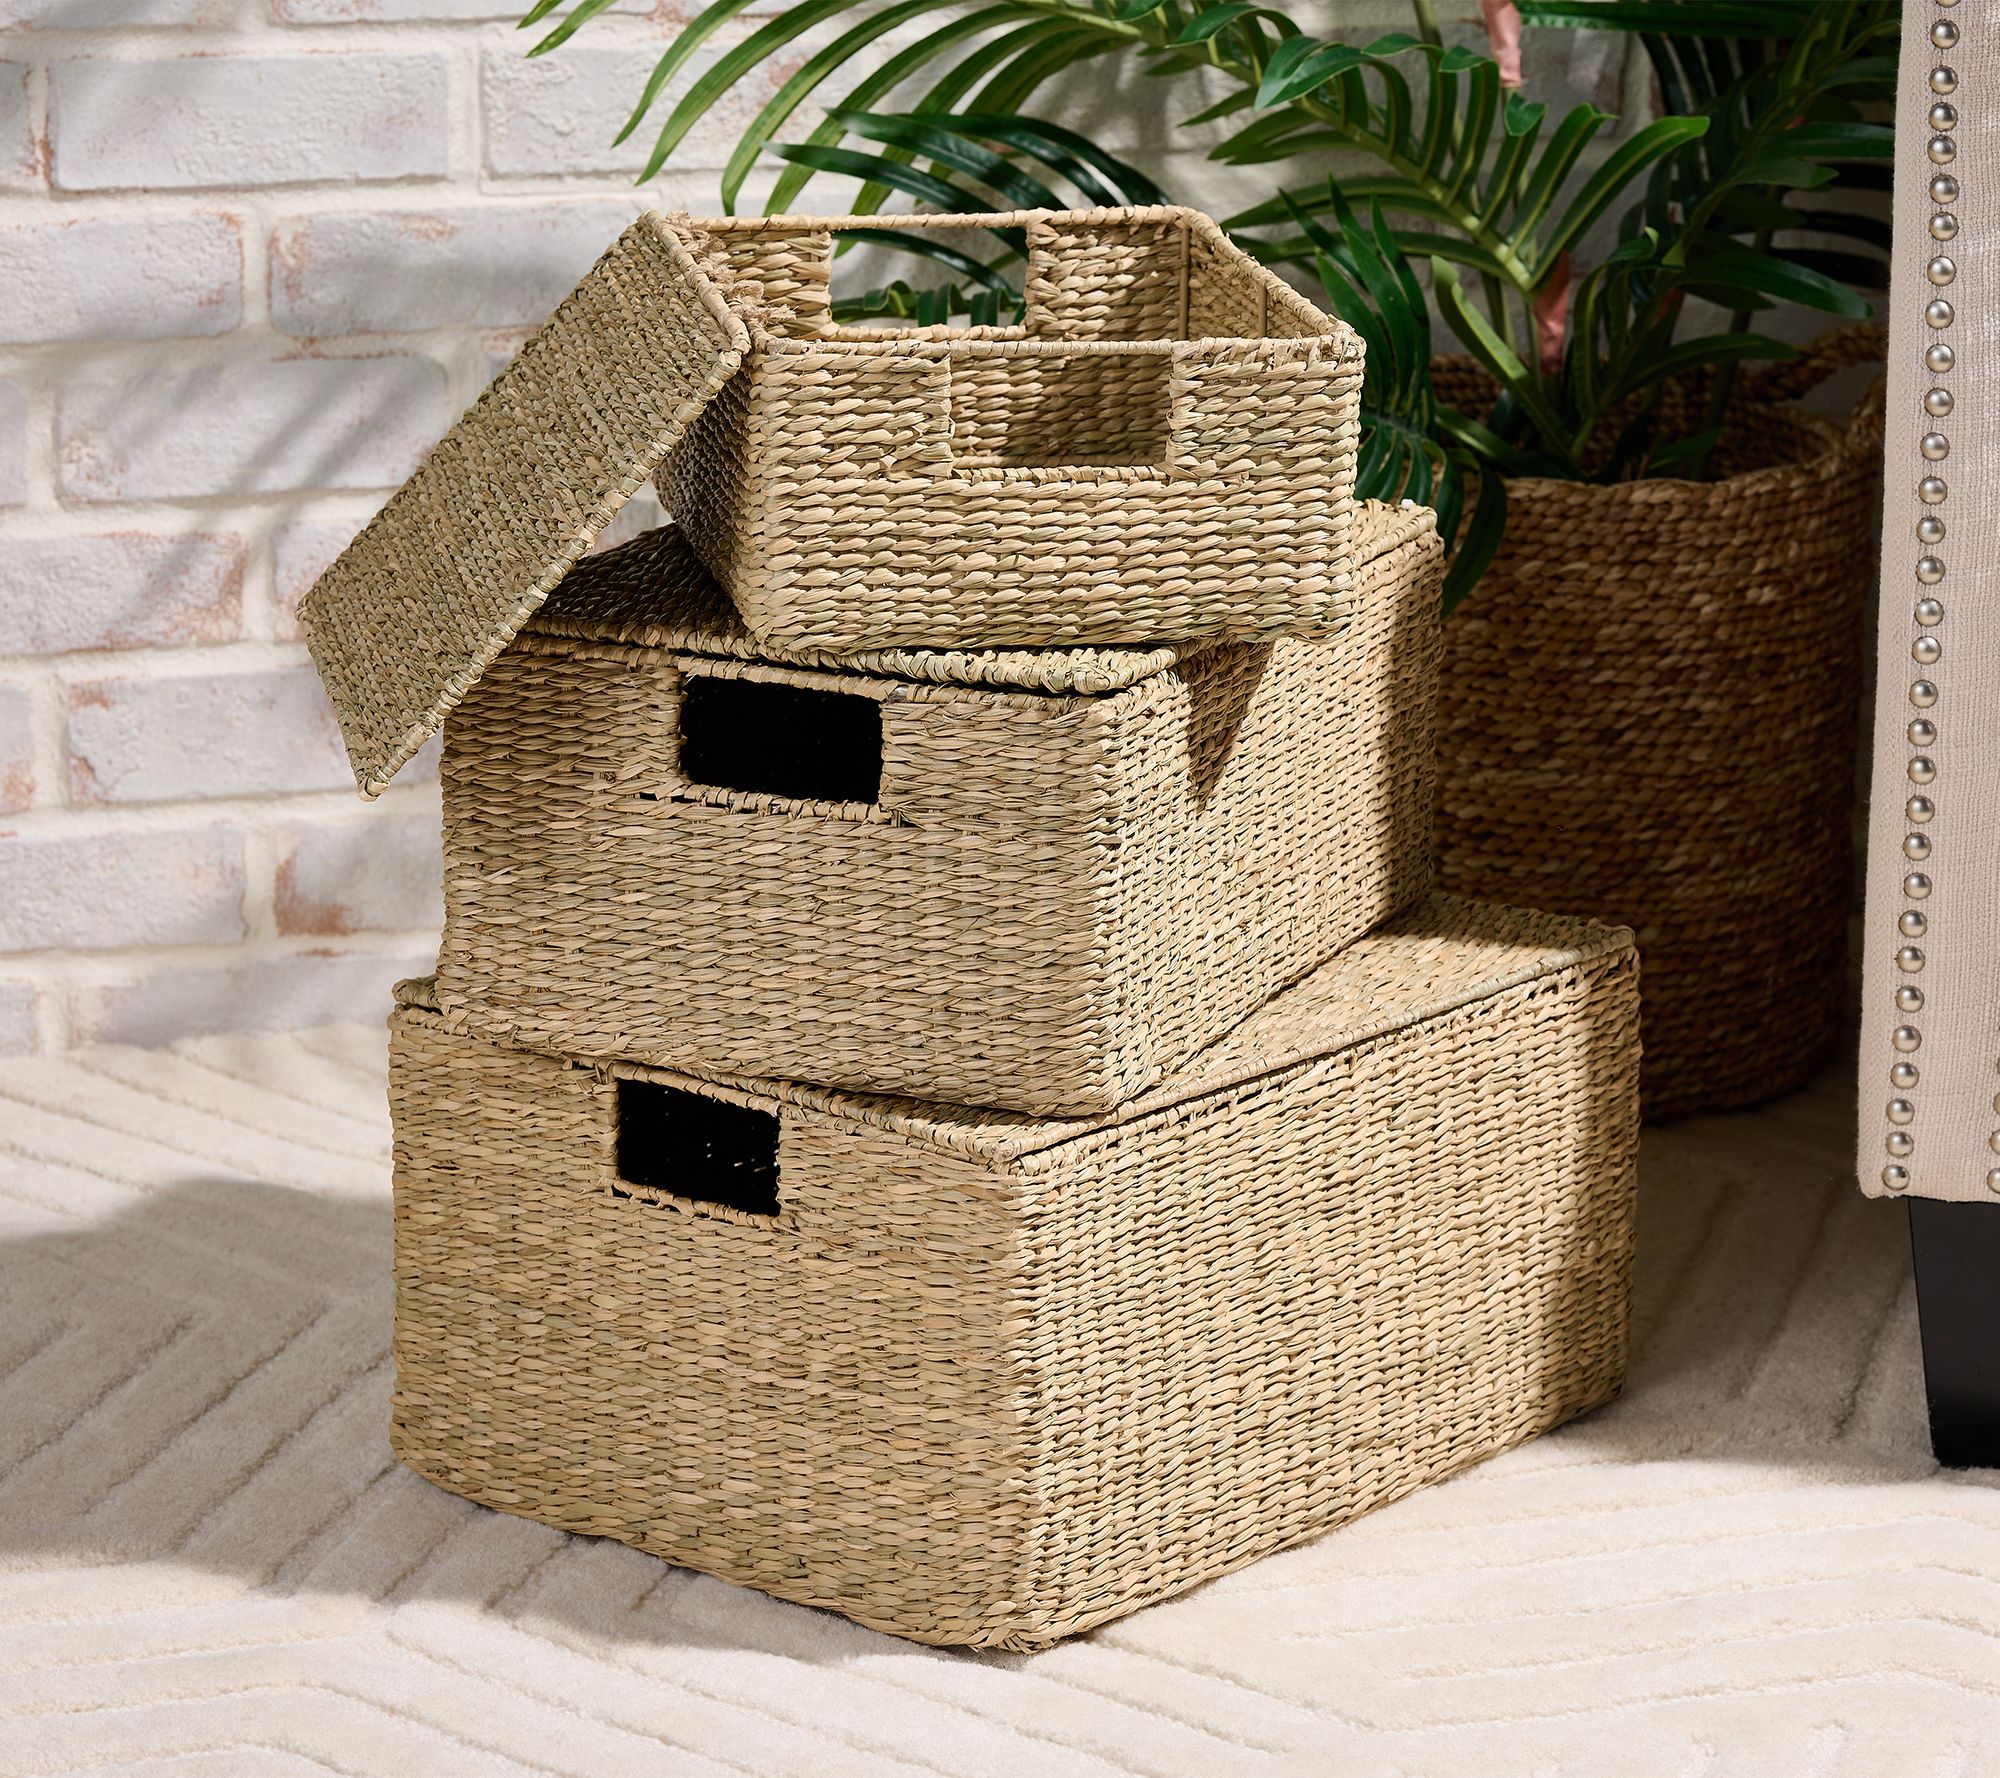 Baskets  Decorative, Storage Baskets & Bins 